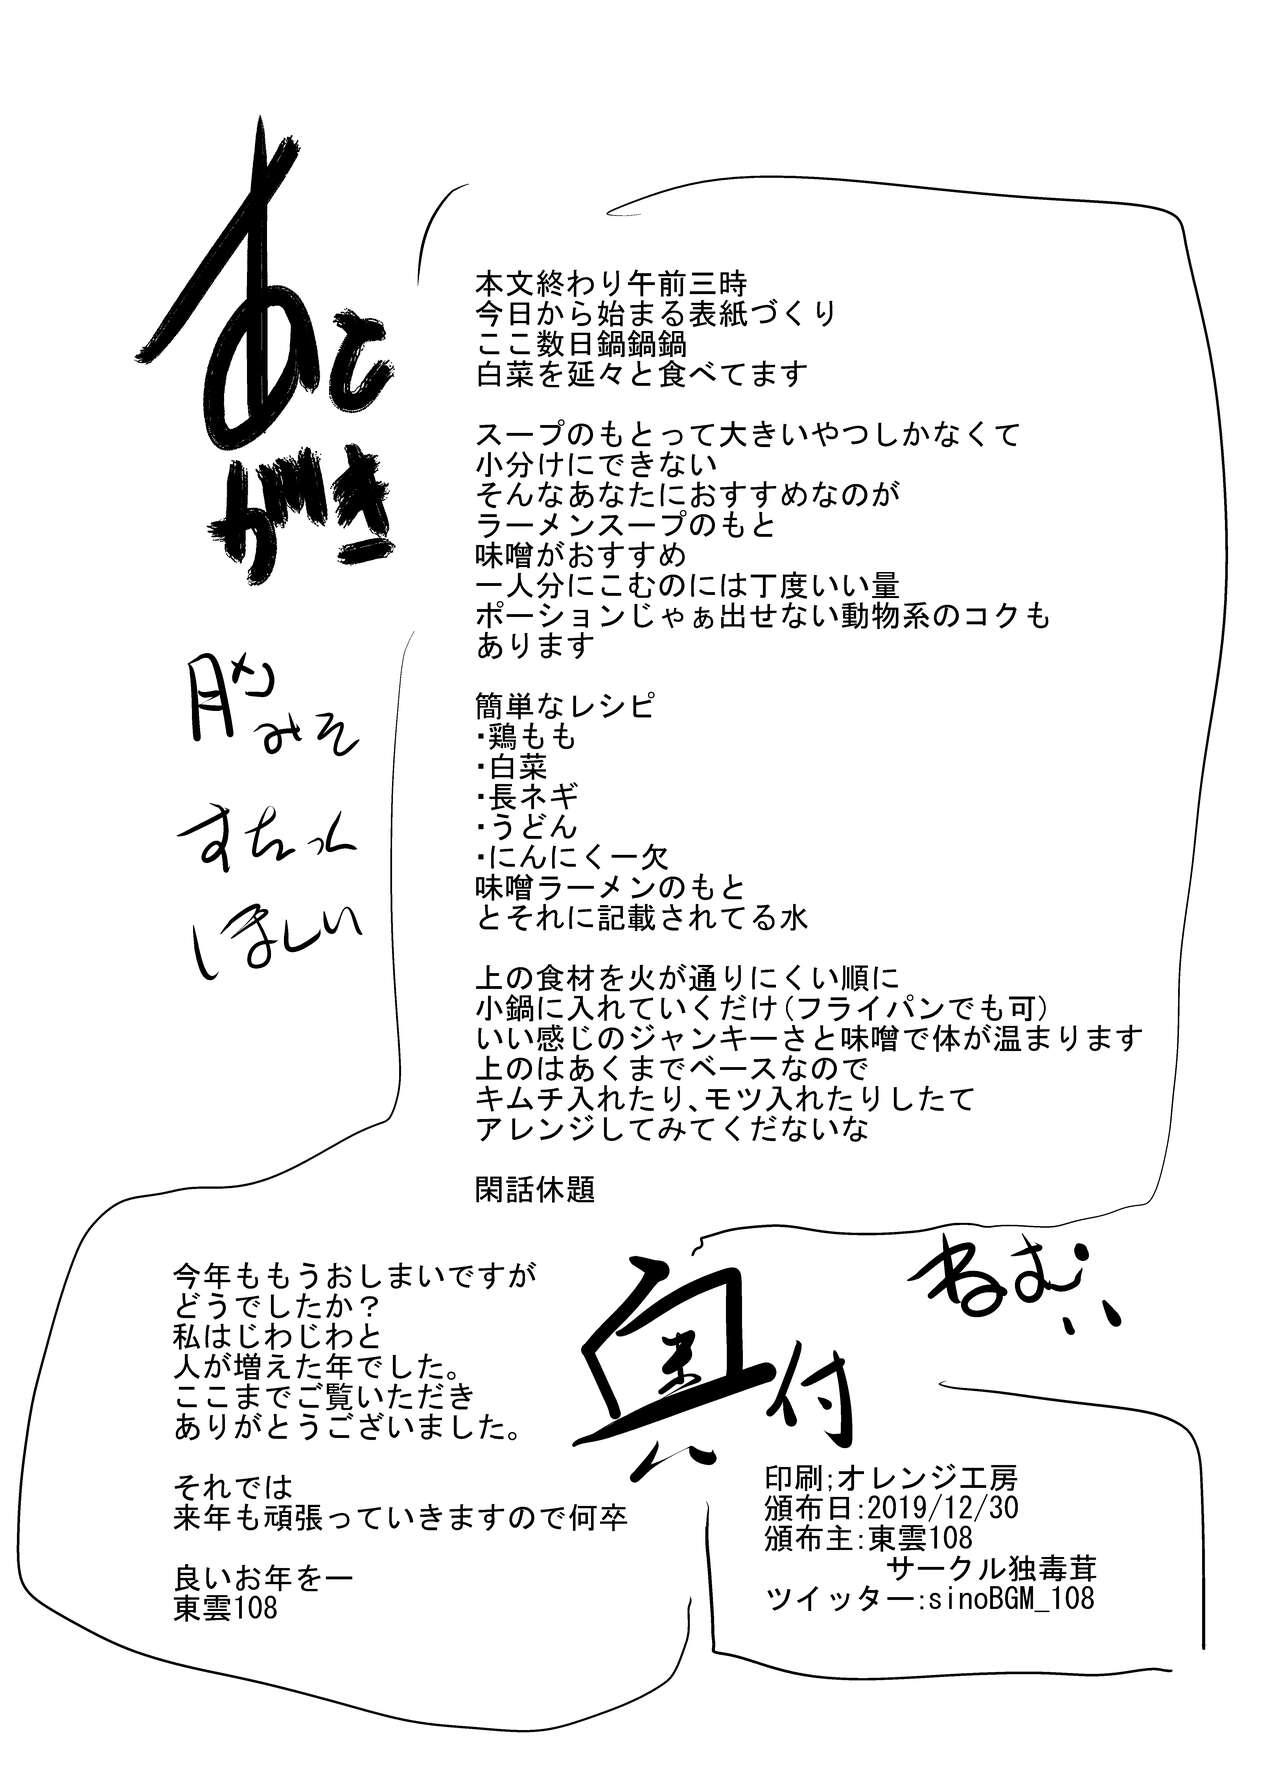 Yoshizawa Deisui Karaoke Box 20